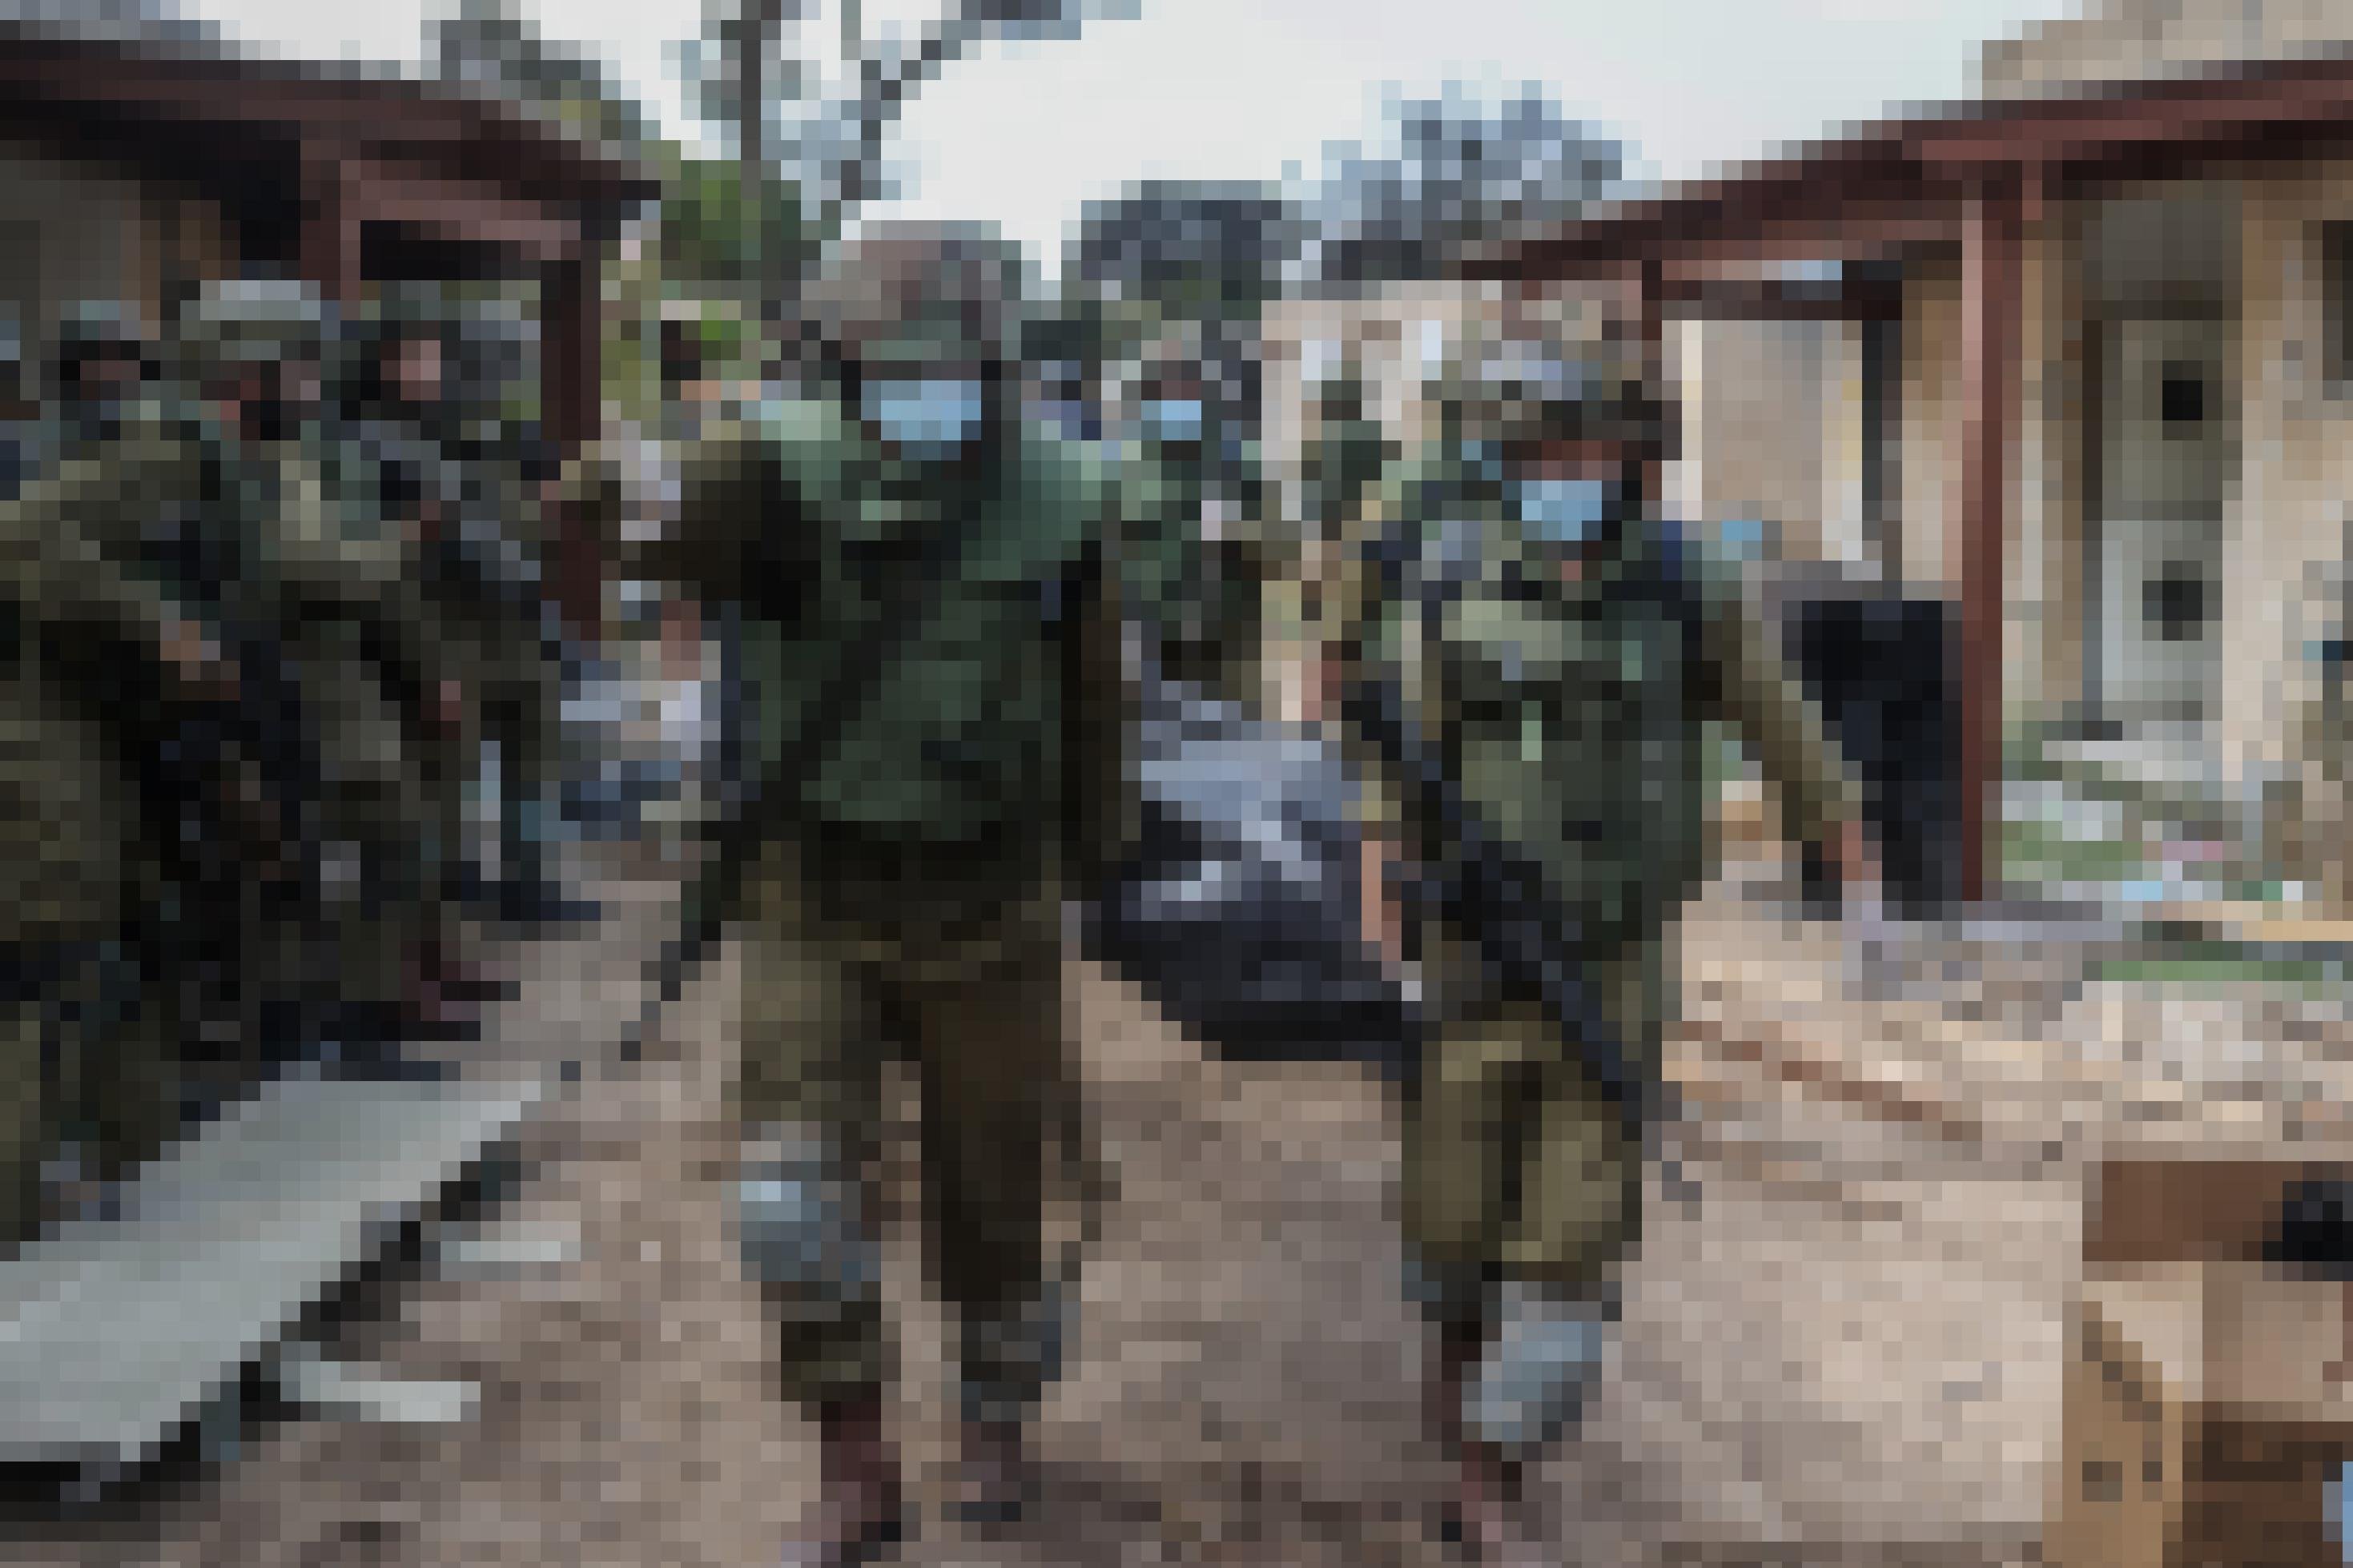 Soldaten mit umgehängten Gewehren tragen Baren mit in Leichensäcken verhüllten Körpern